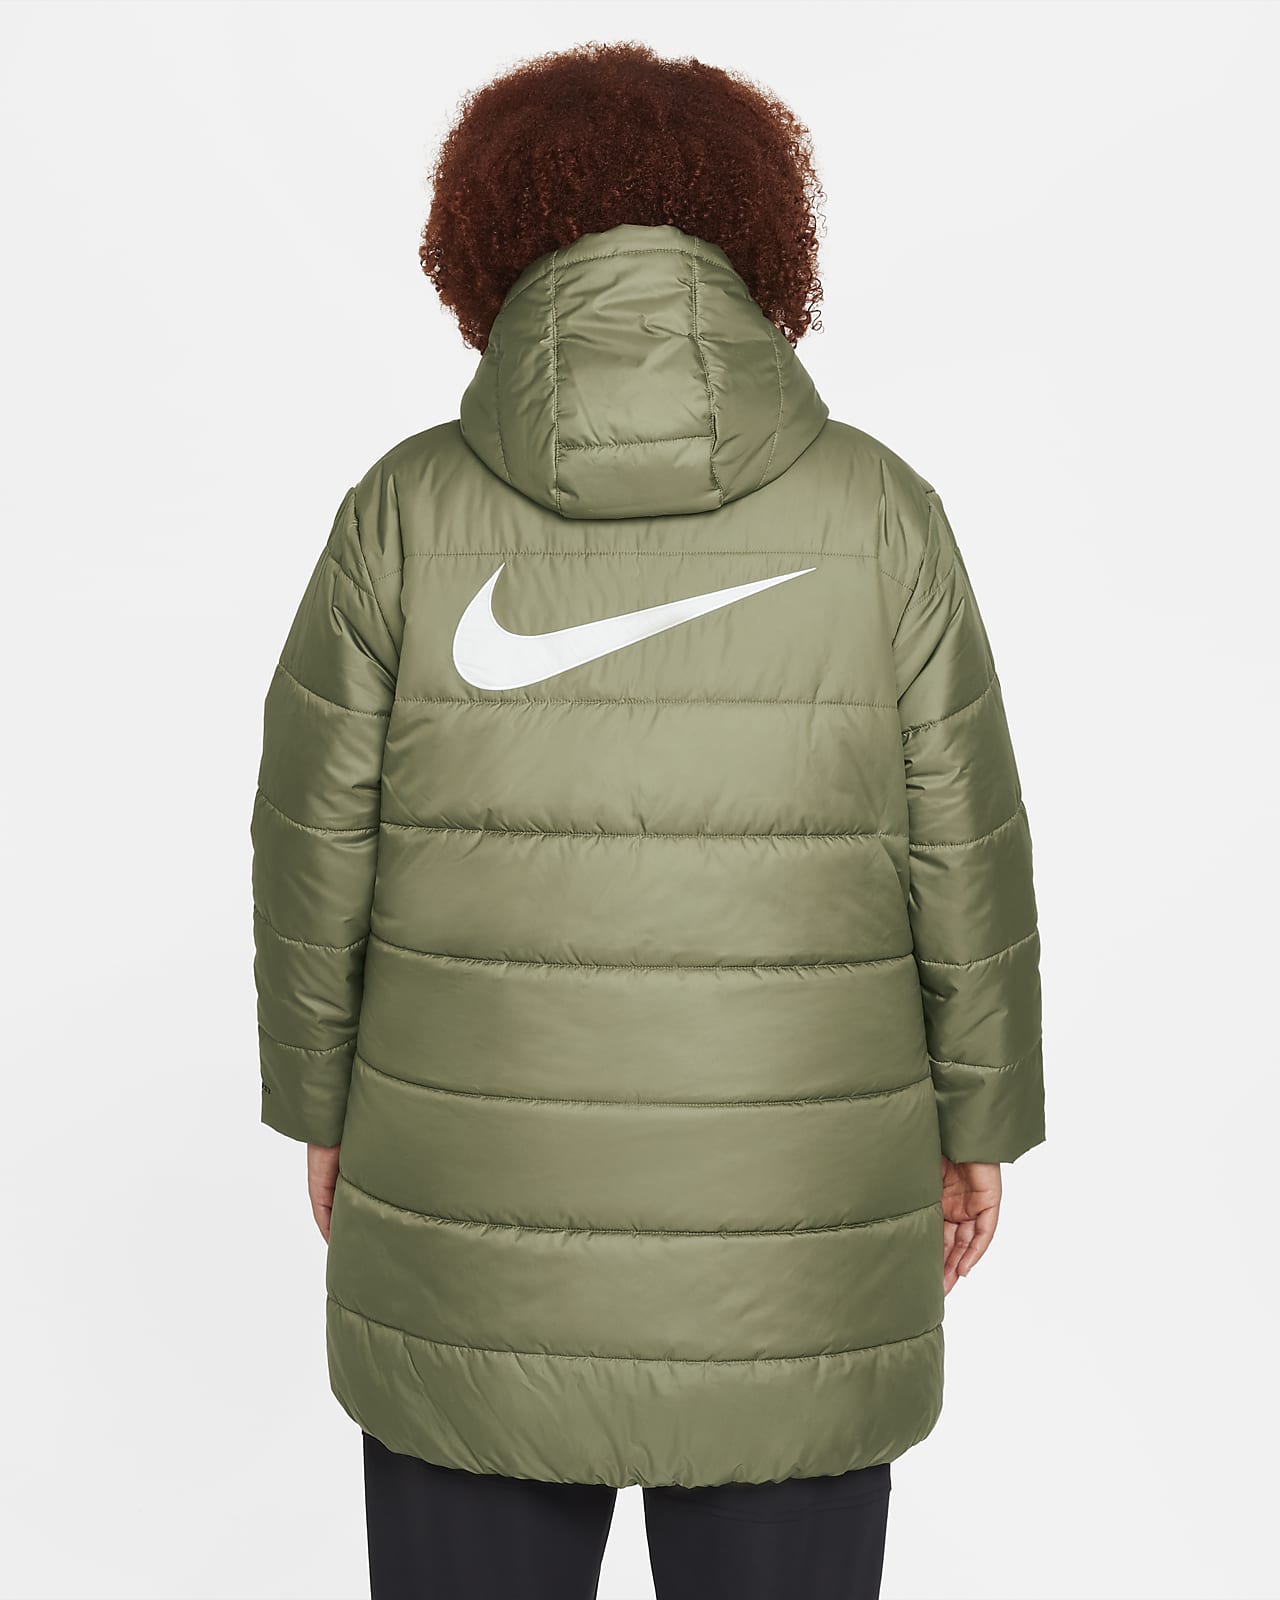 Nike Sportswear Therma-FIT Repel Parka con capucha (Talla grande) - Mujer. ES